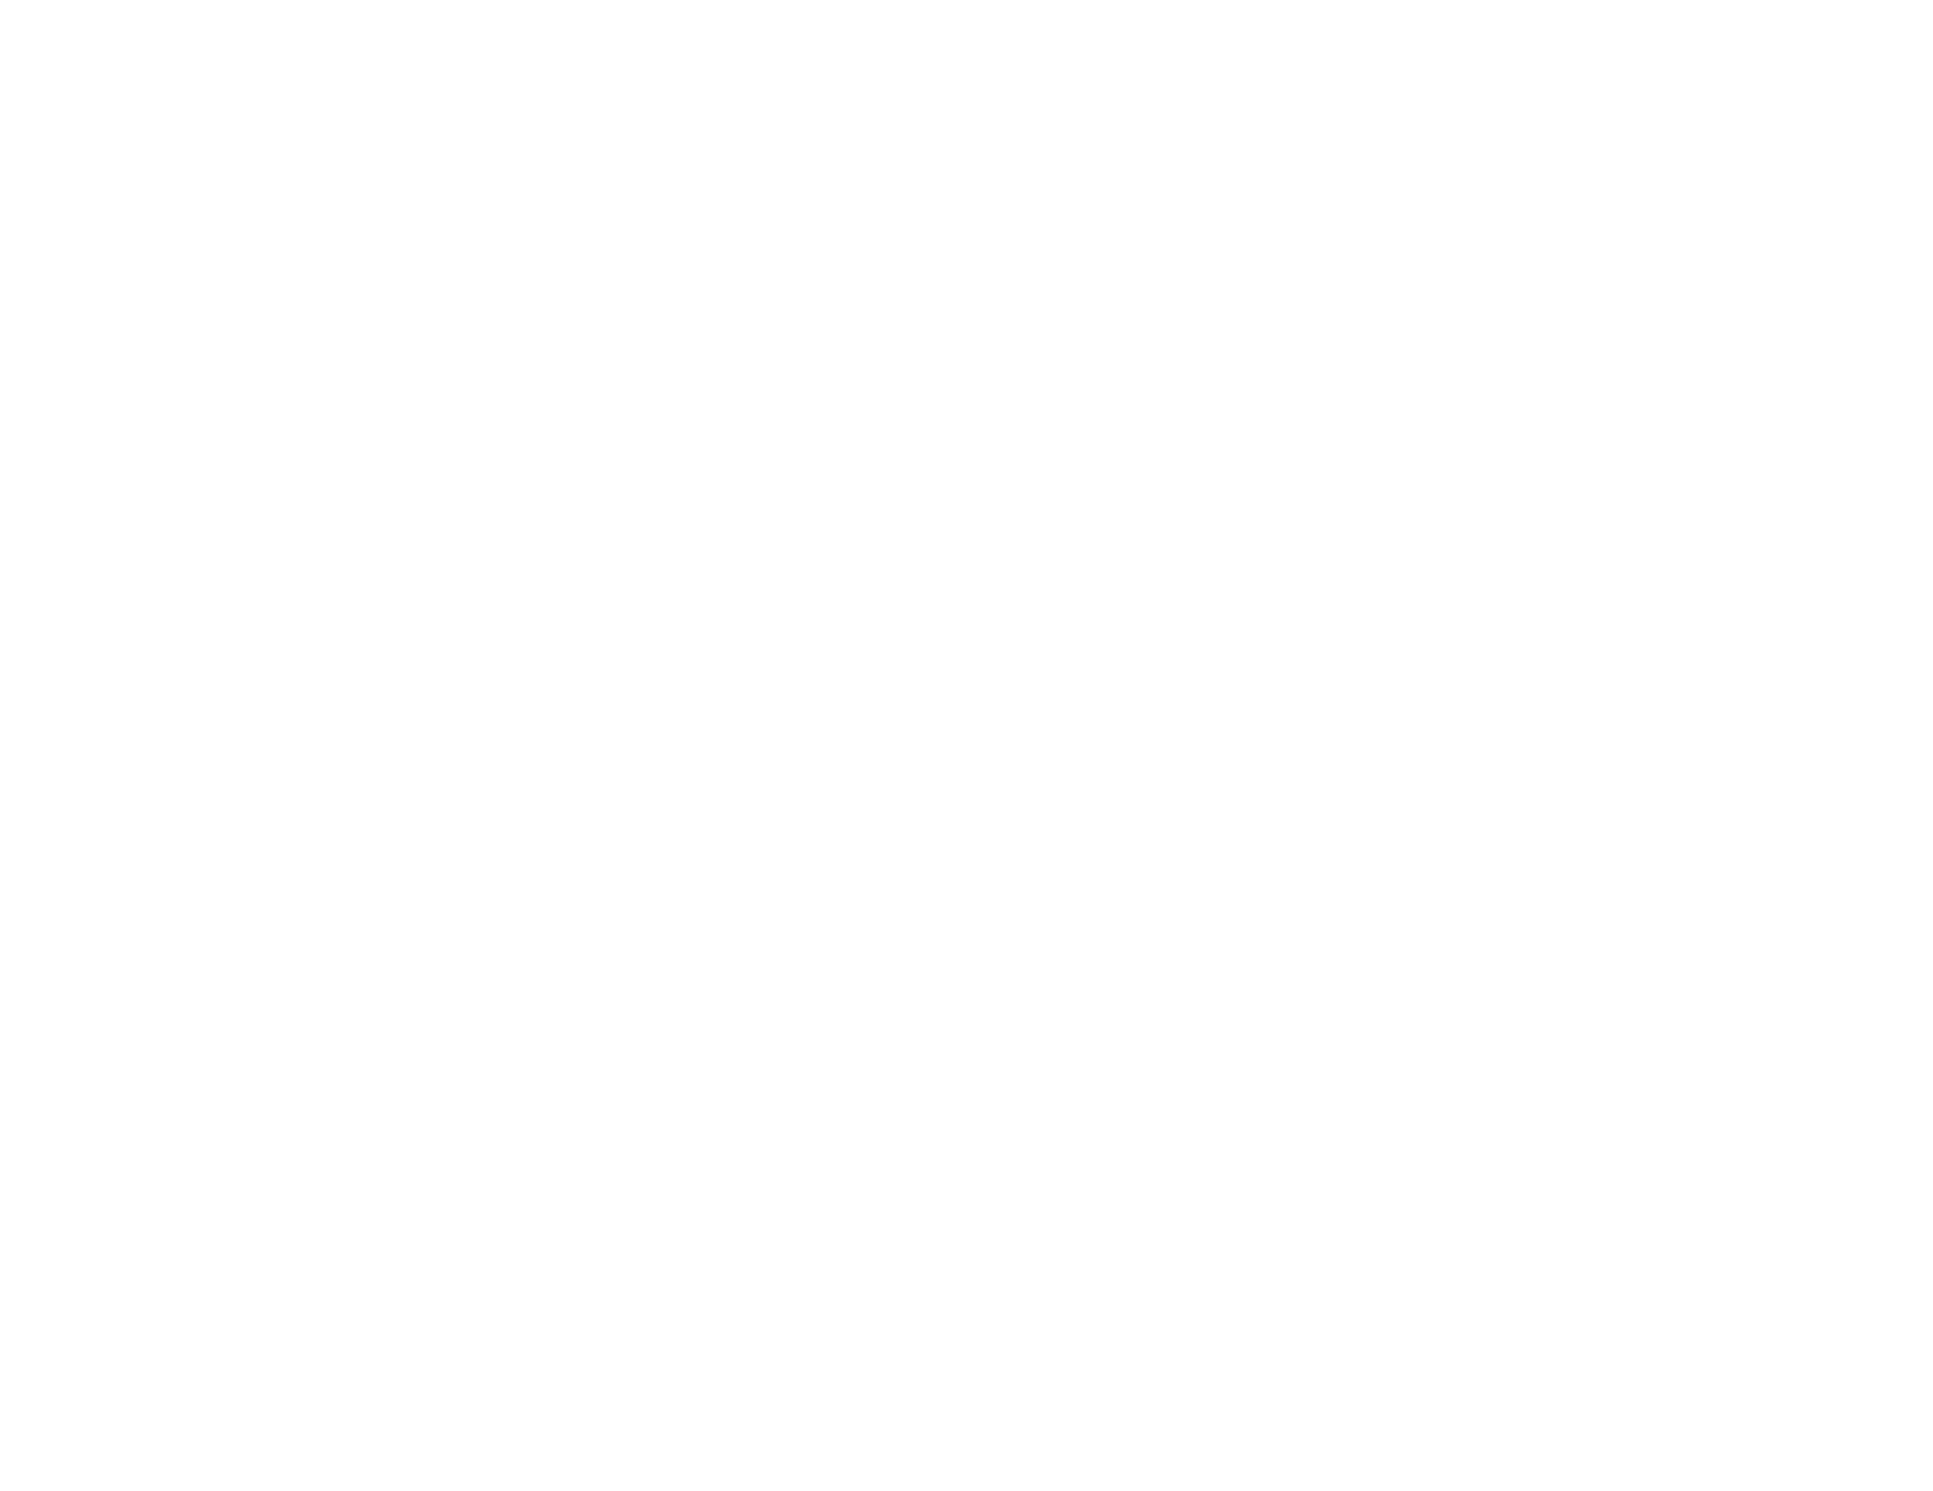 GIBI